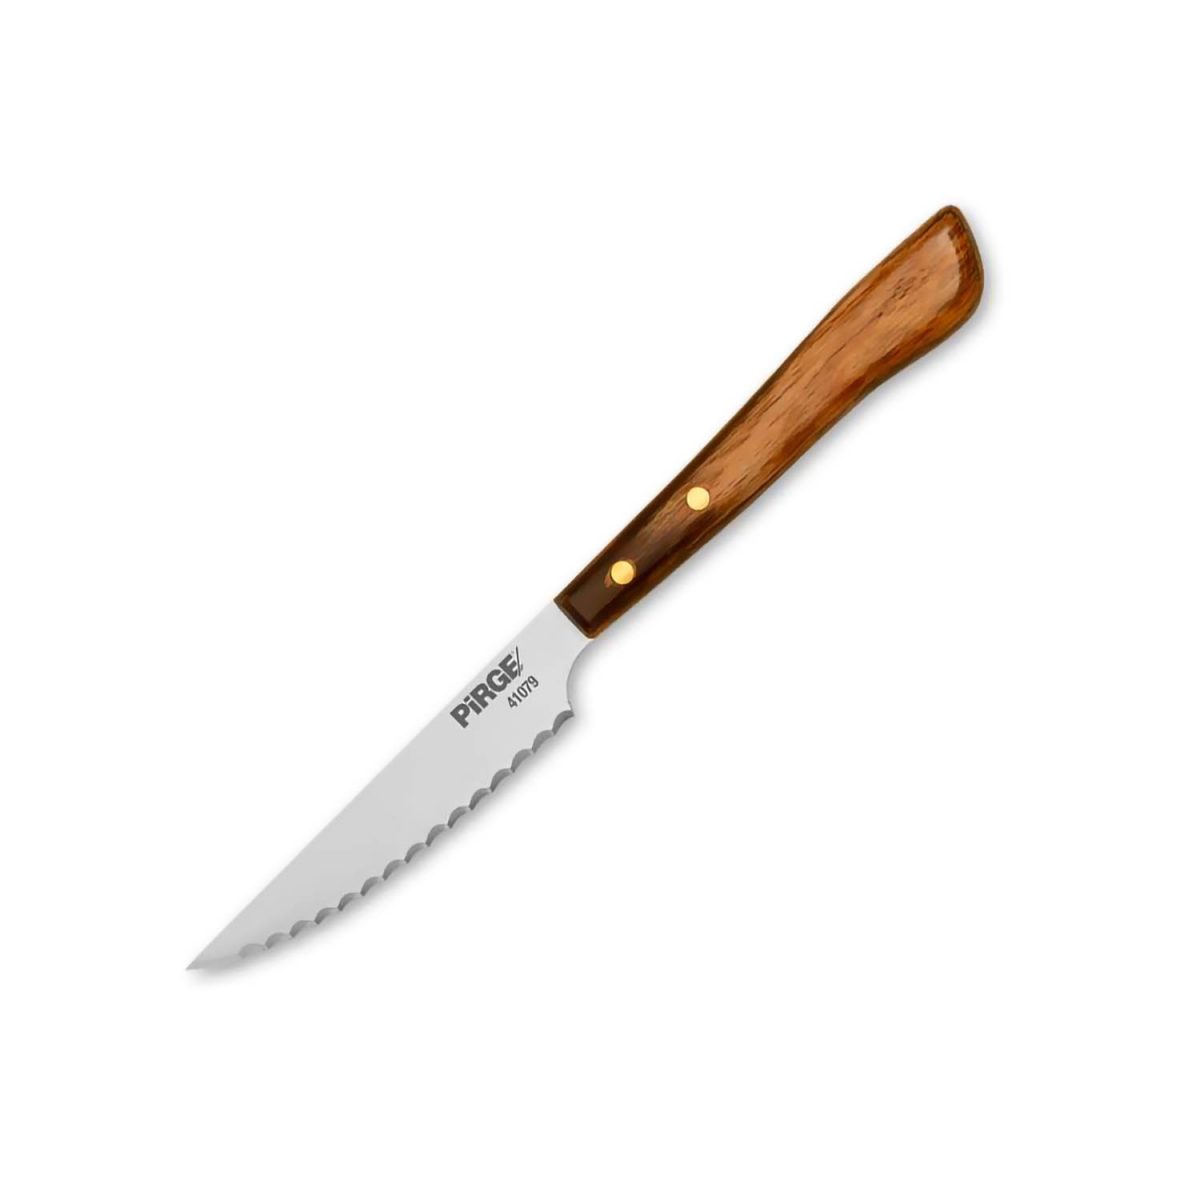 Pirge Steak / Biftek Bıçağı Polywood Sap 9 cm – 41079 Bıçaklar ve Dilimleyiciler A+